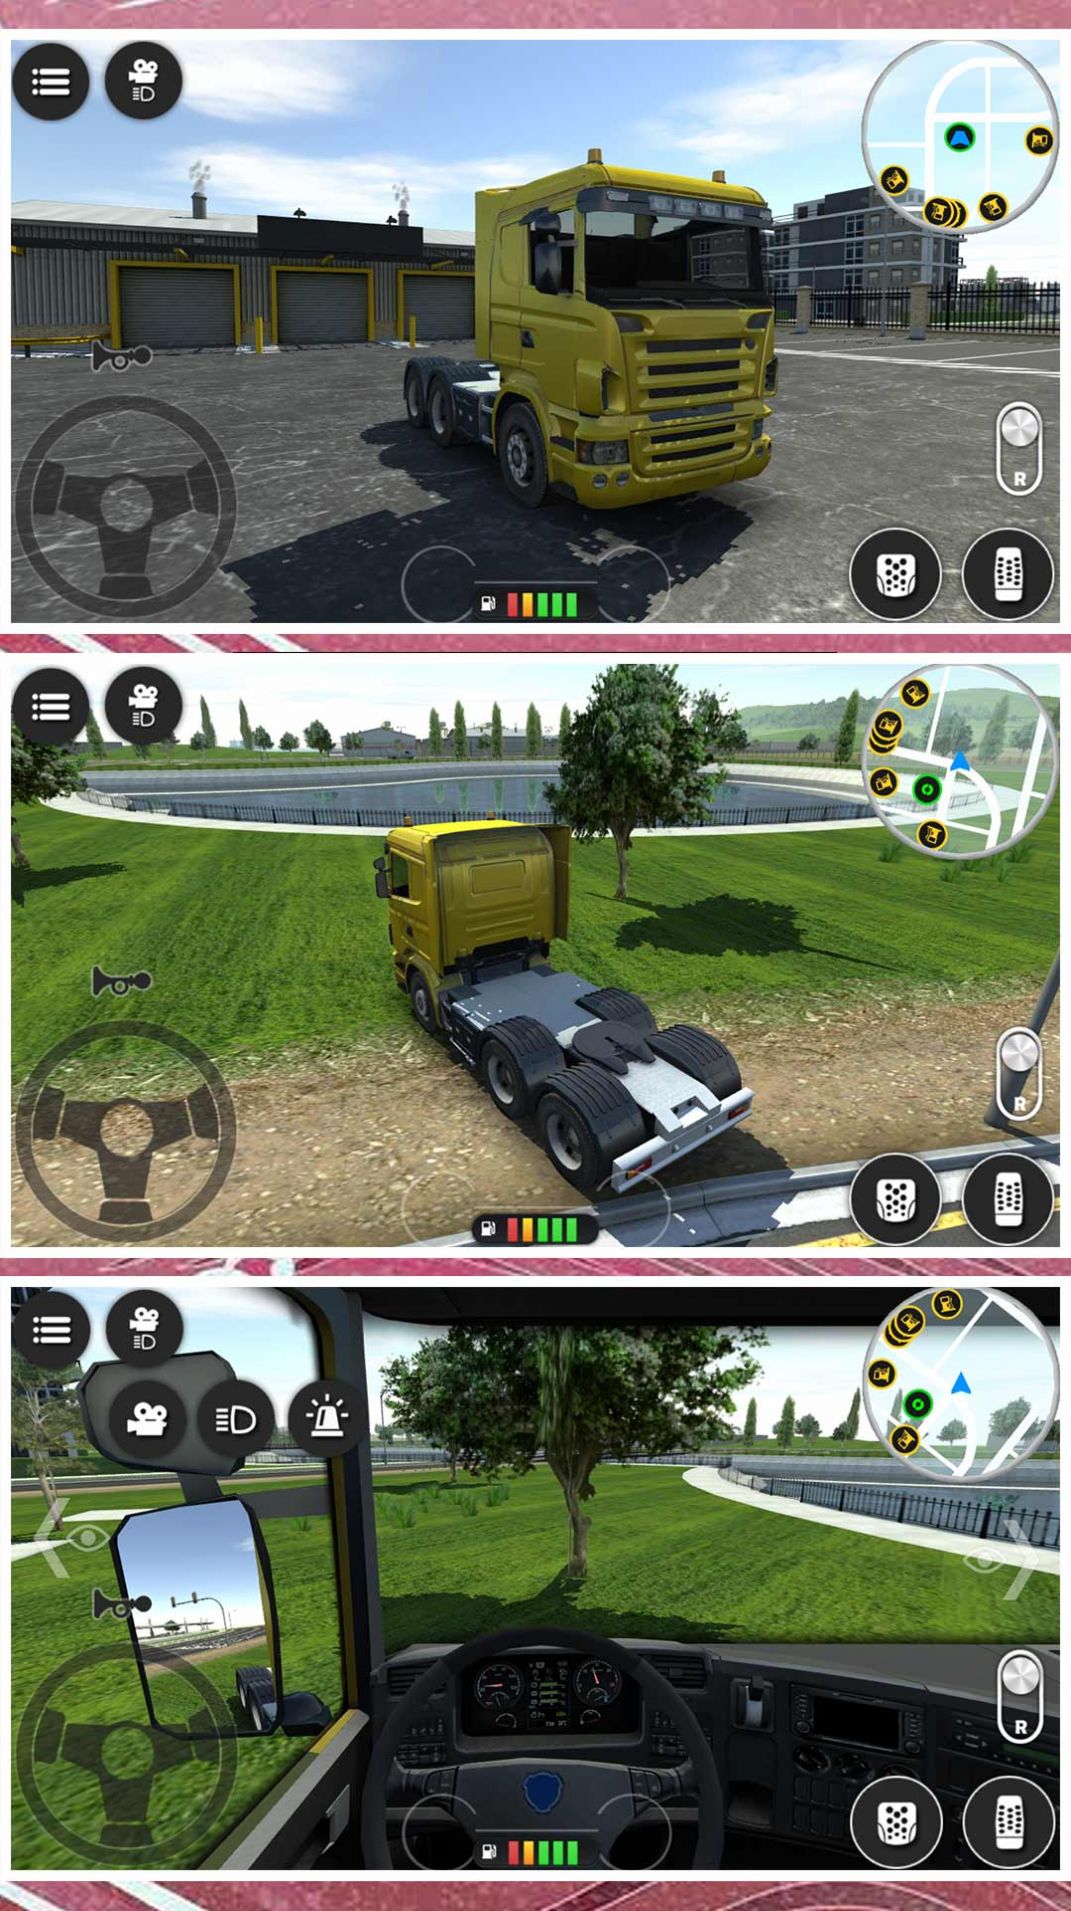 小黄开车游戏下载,小黄开车游戏官方手机版 v2.0.0